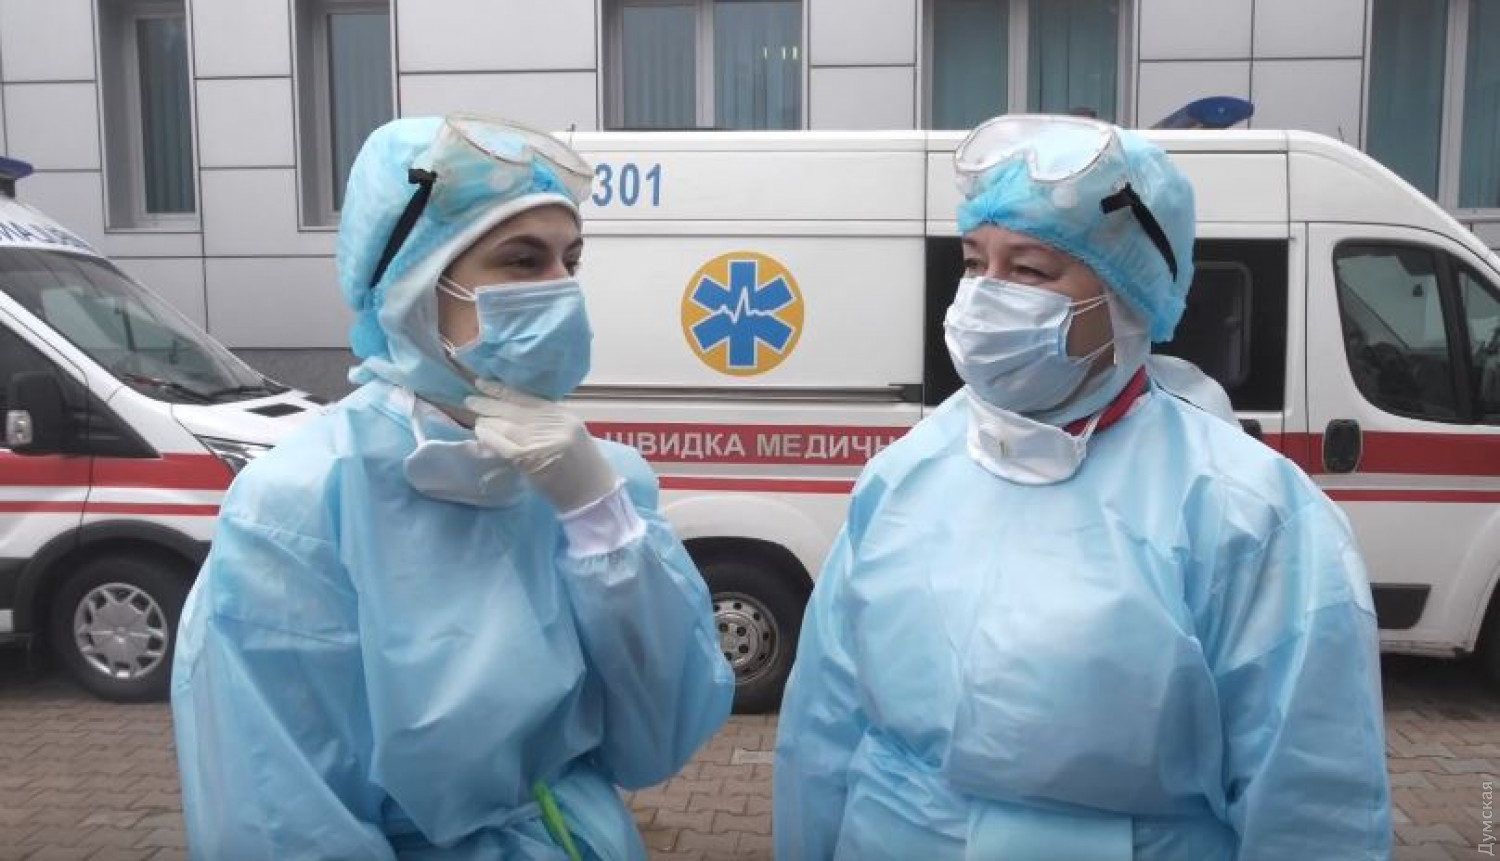 "Уже всем ясно", - эпидемиолог пояснила, к чему приведет карантин в Украине из-за коронавируса